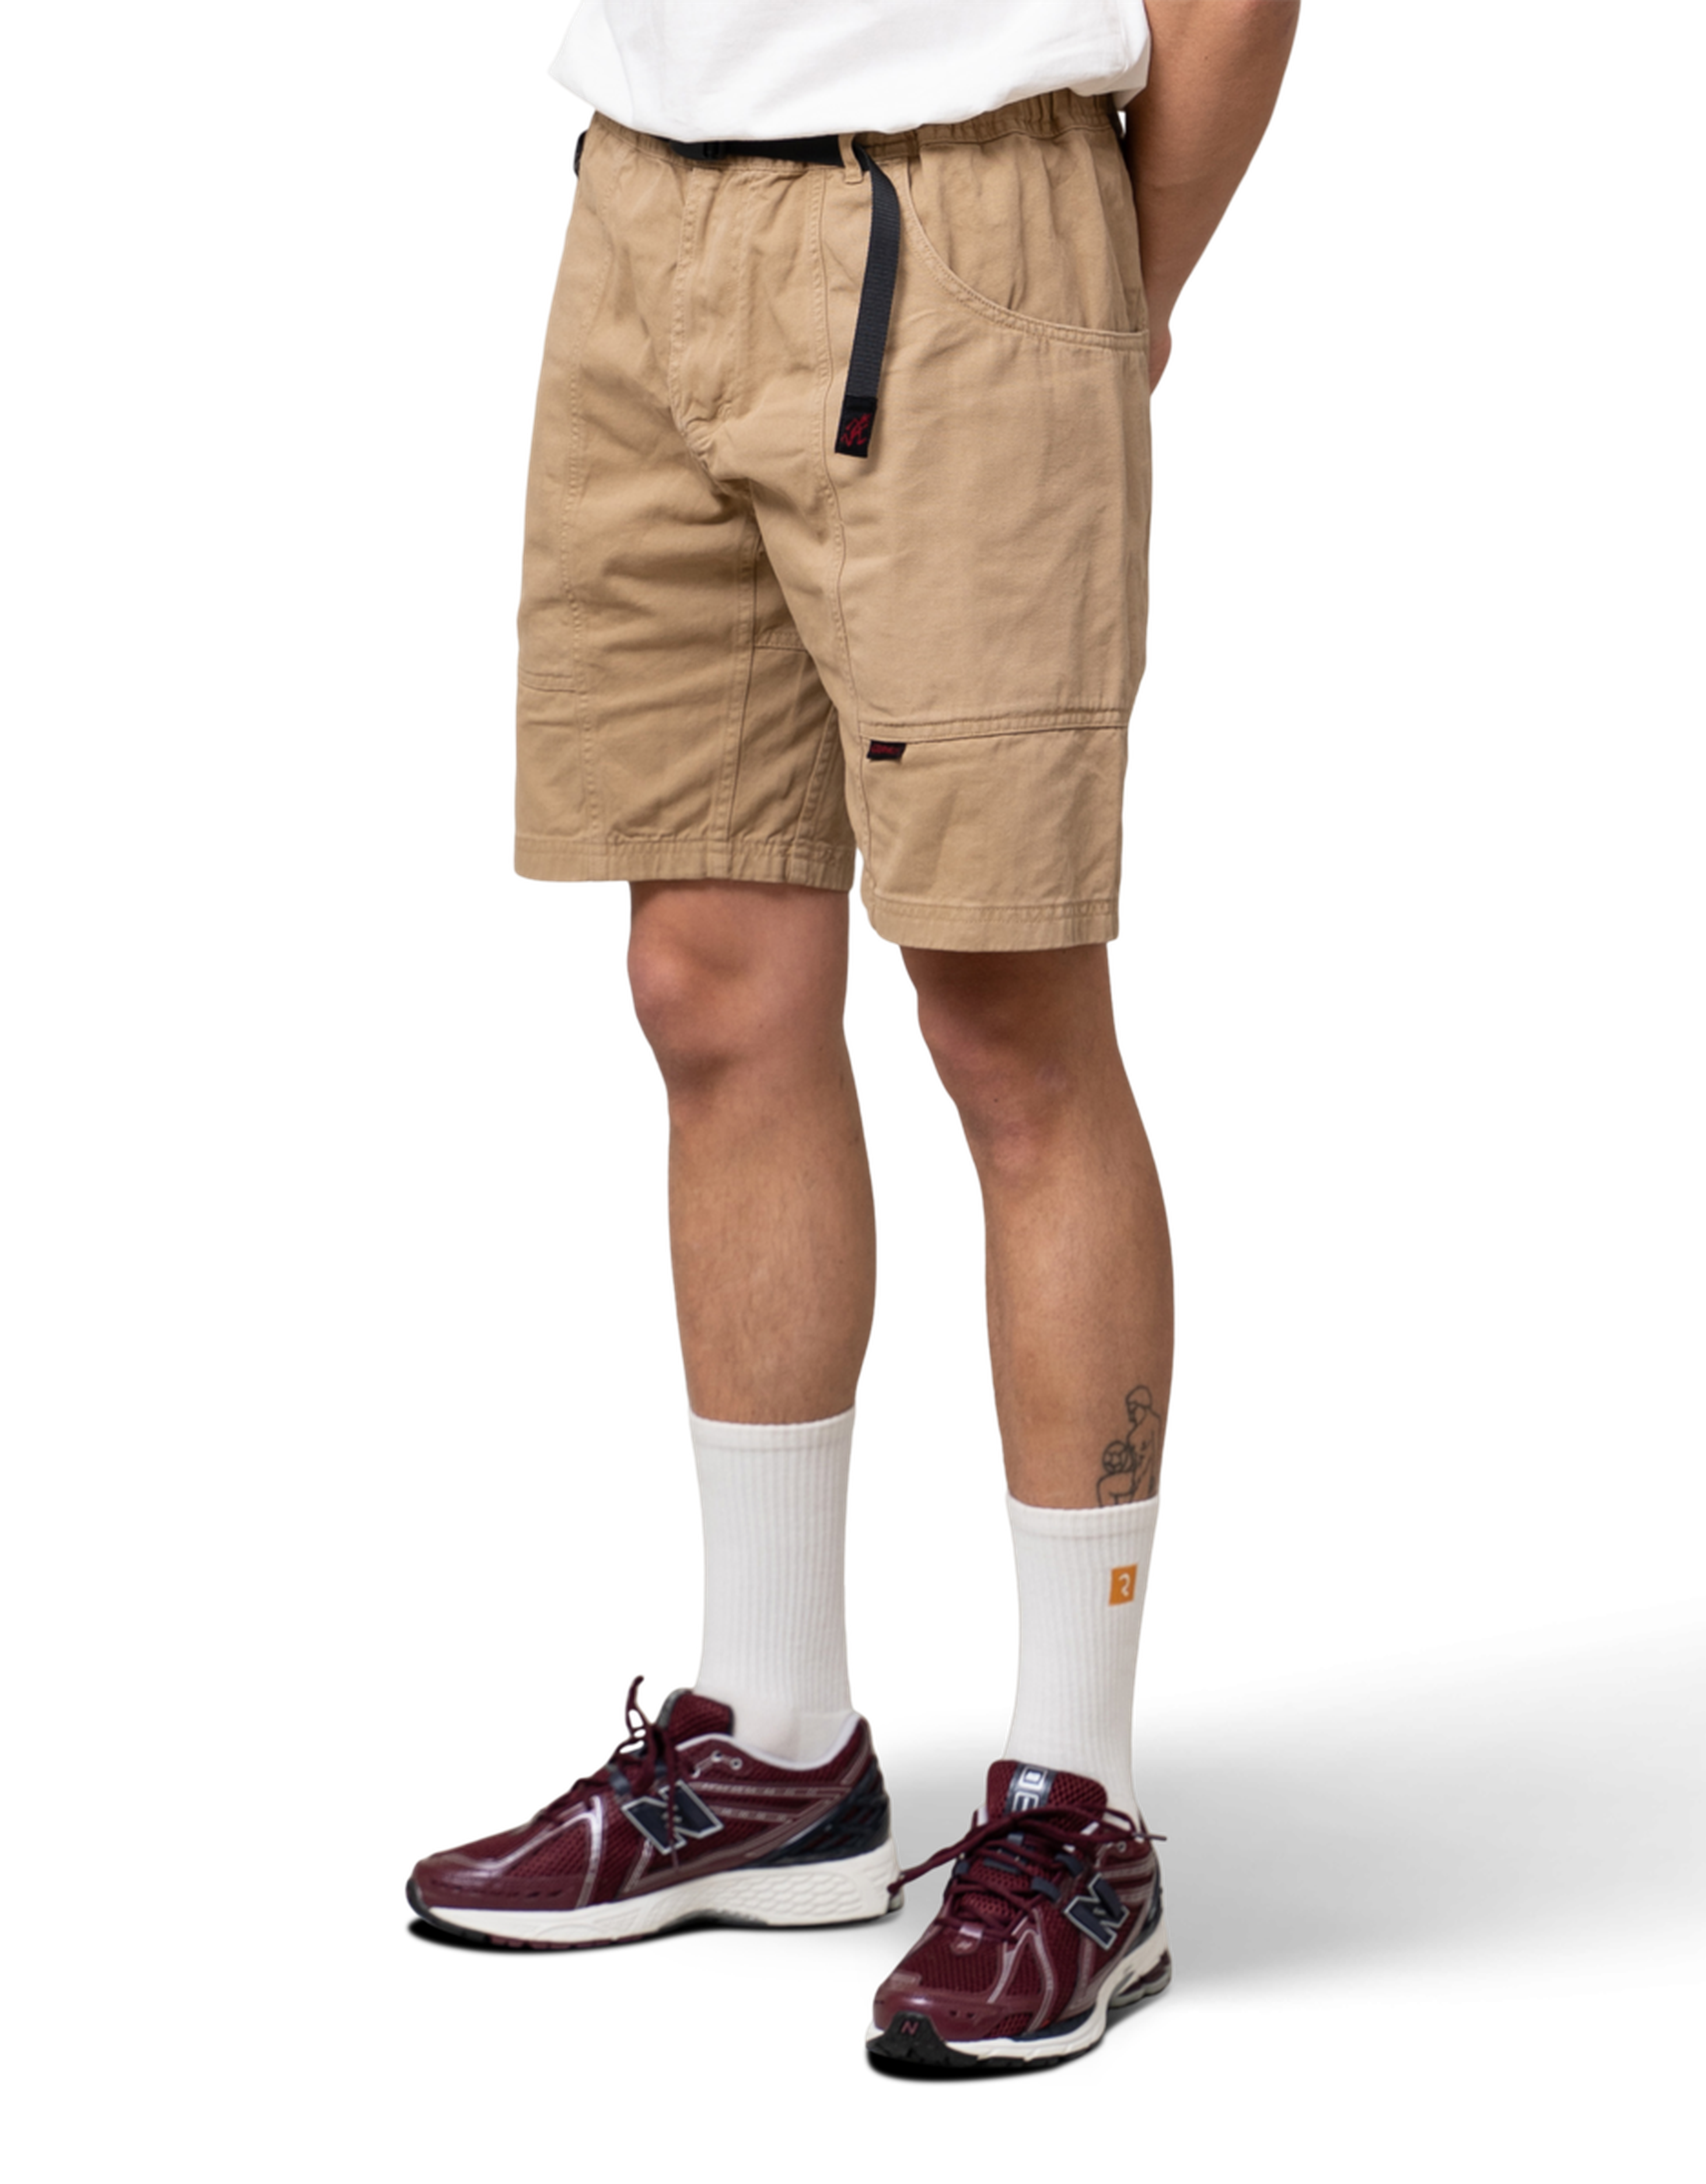 Gadget Shorts